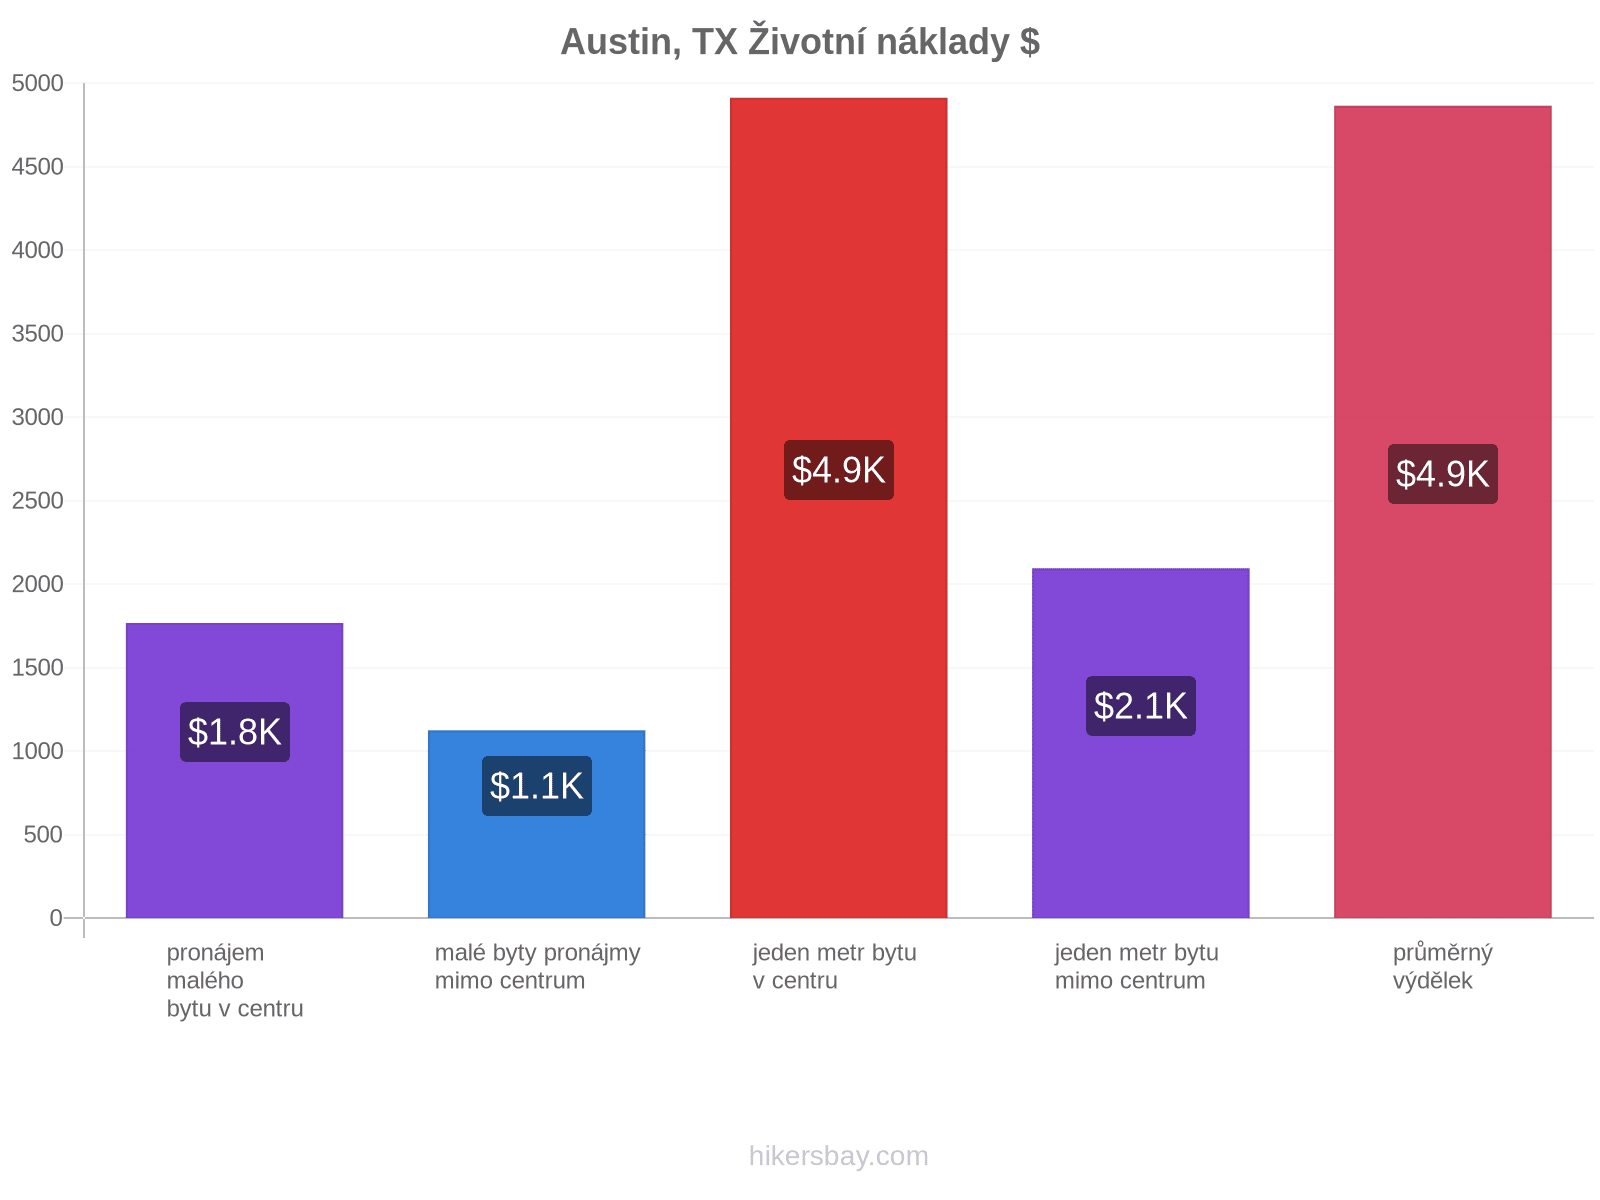 Austin, TX životní náklady hikersbay.com